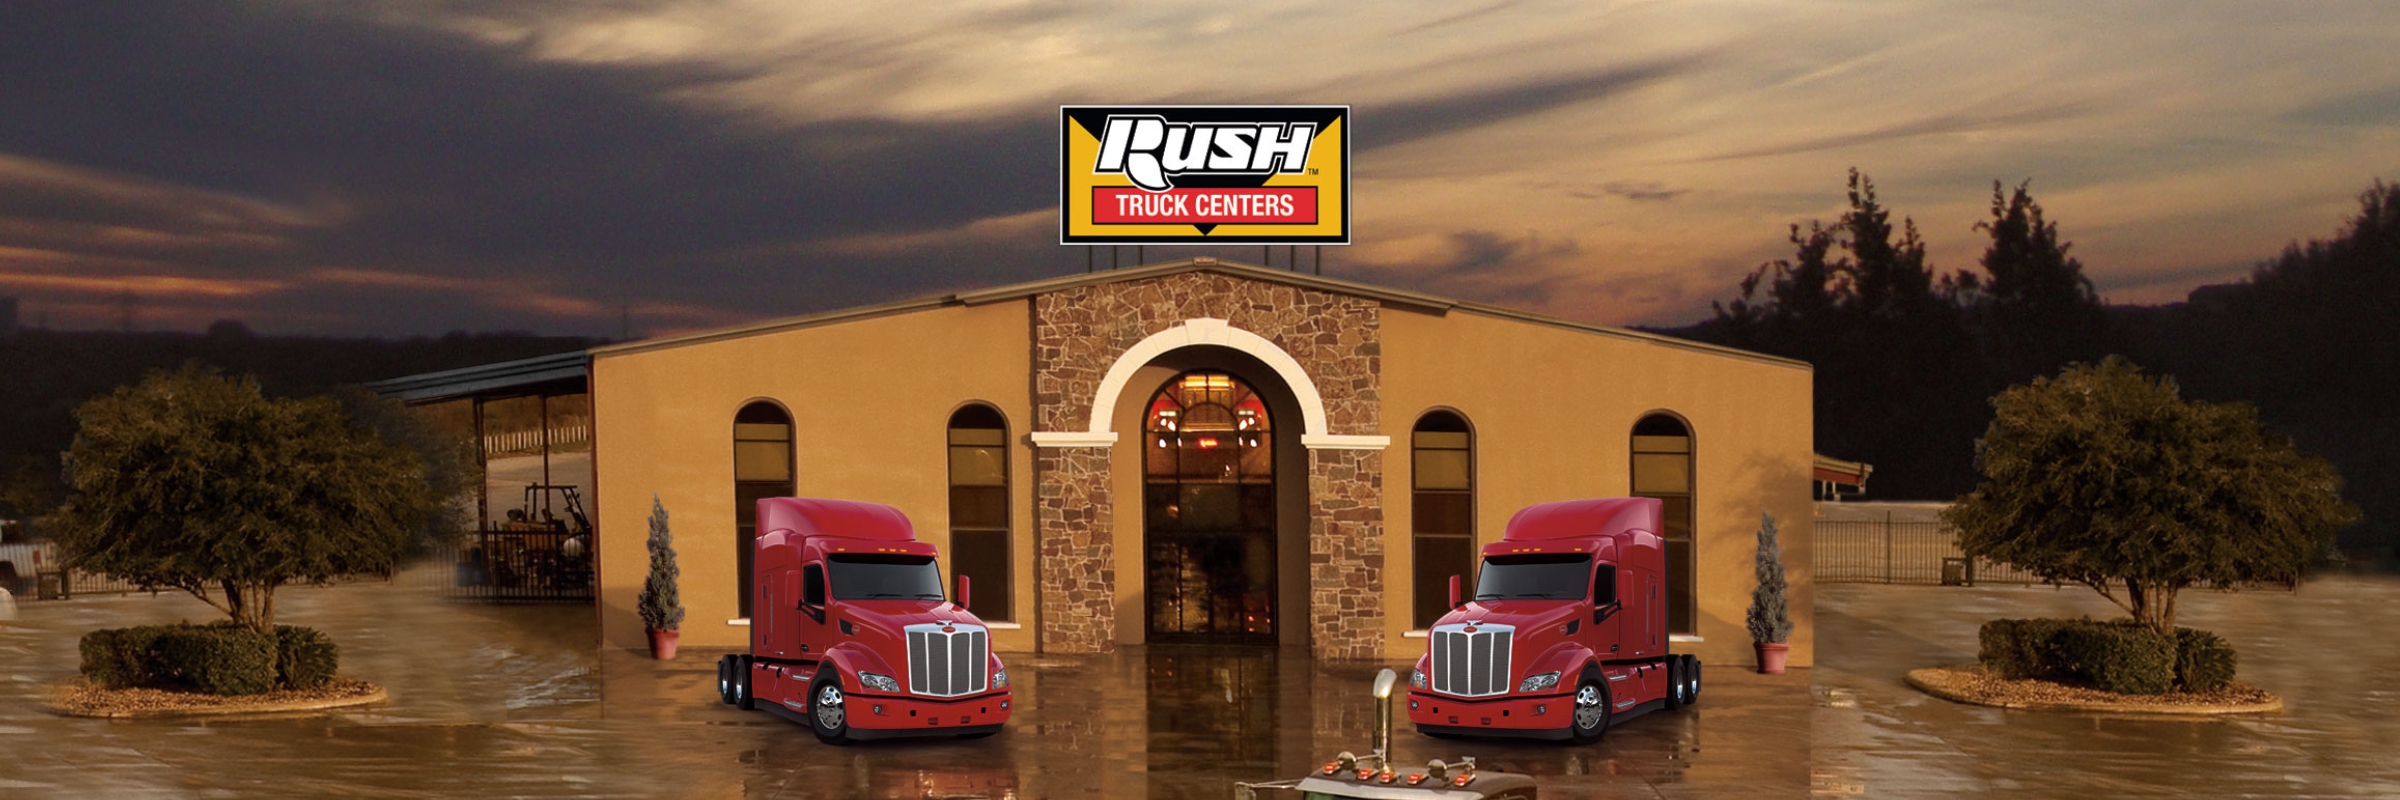 Rush Truck Centers – Pharr Exterior